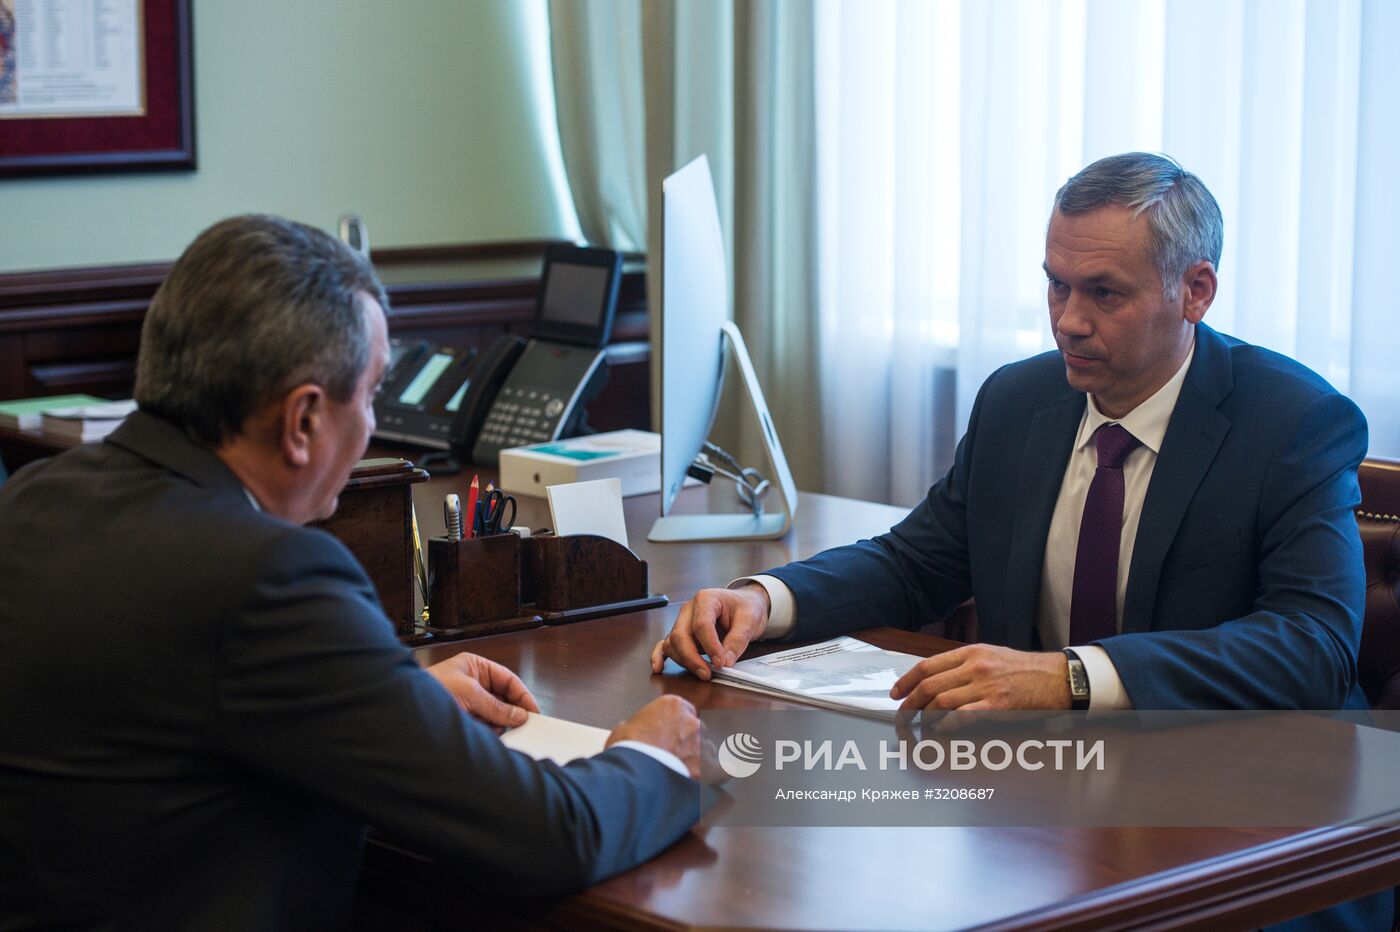 Врио губернатора Новосибирской области А. Травников представлен властям региона